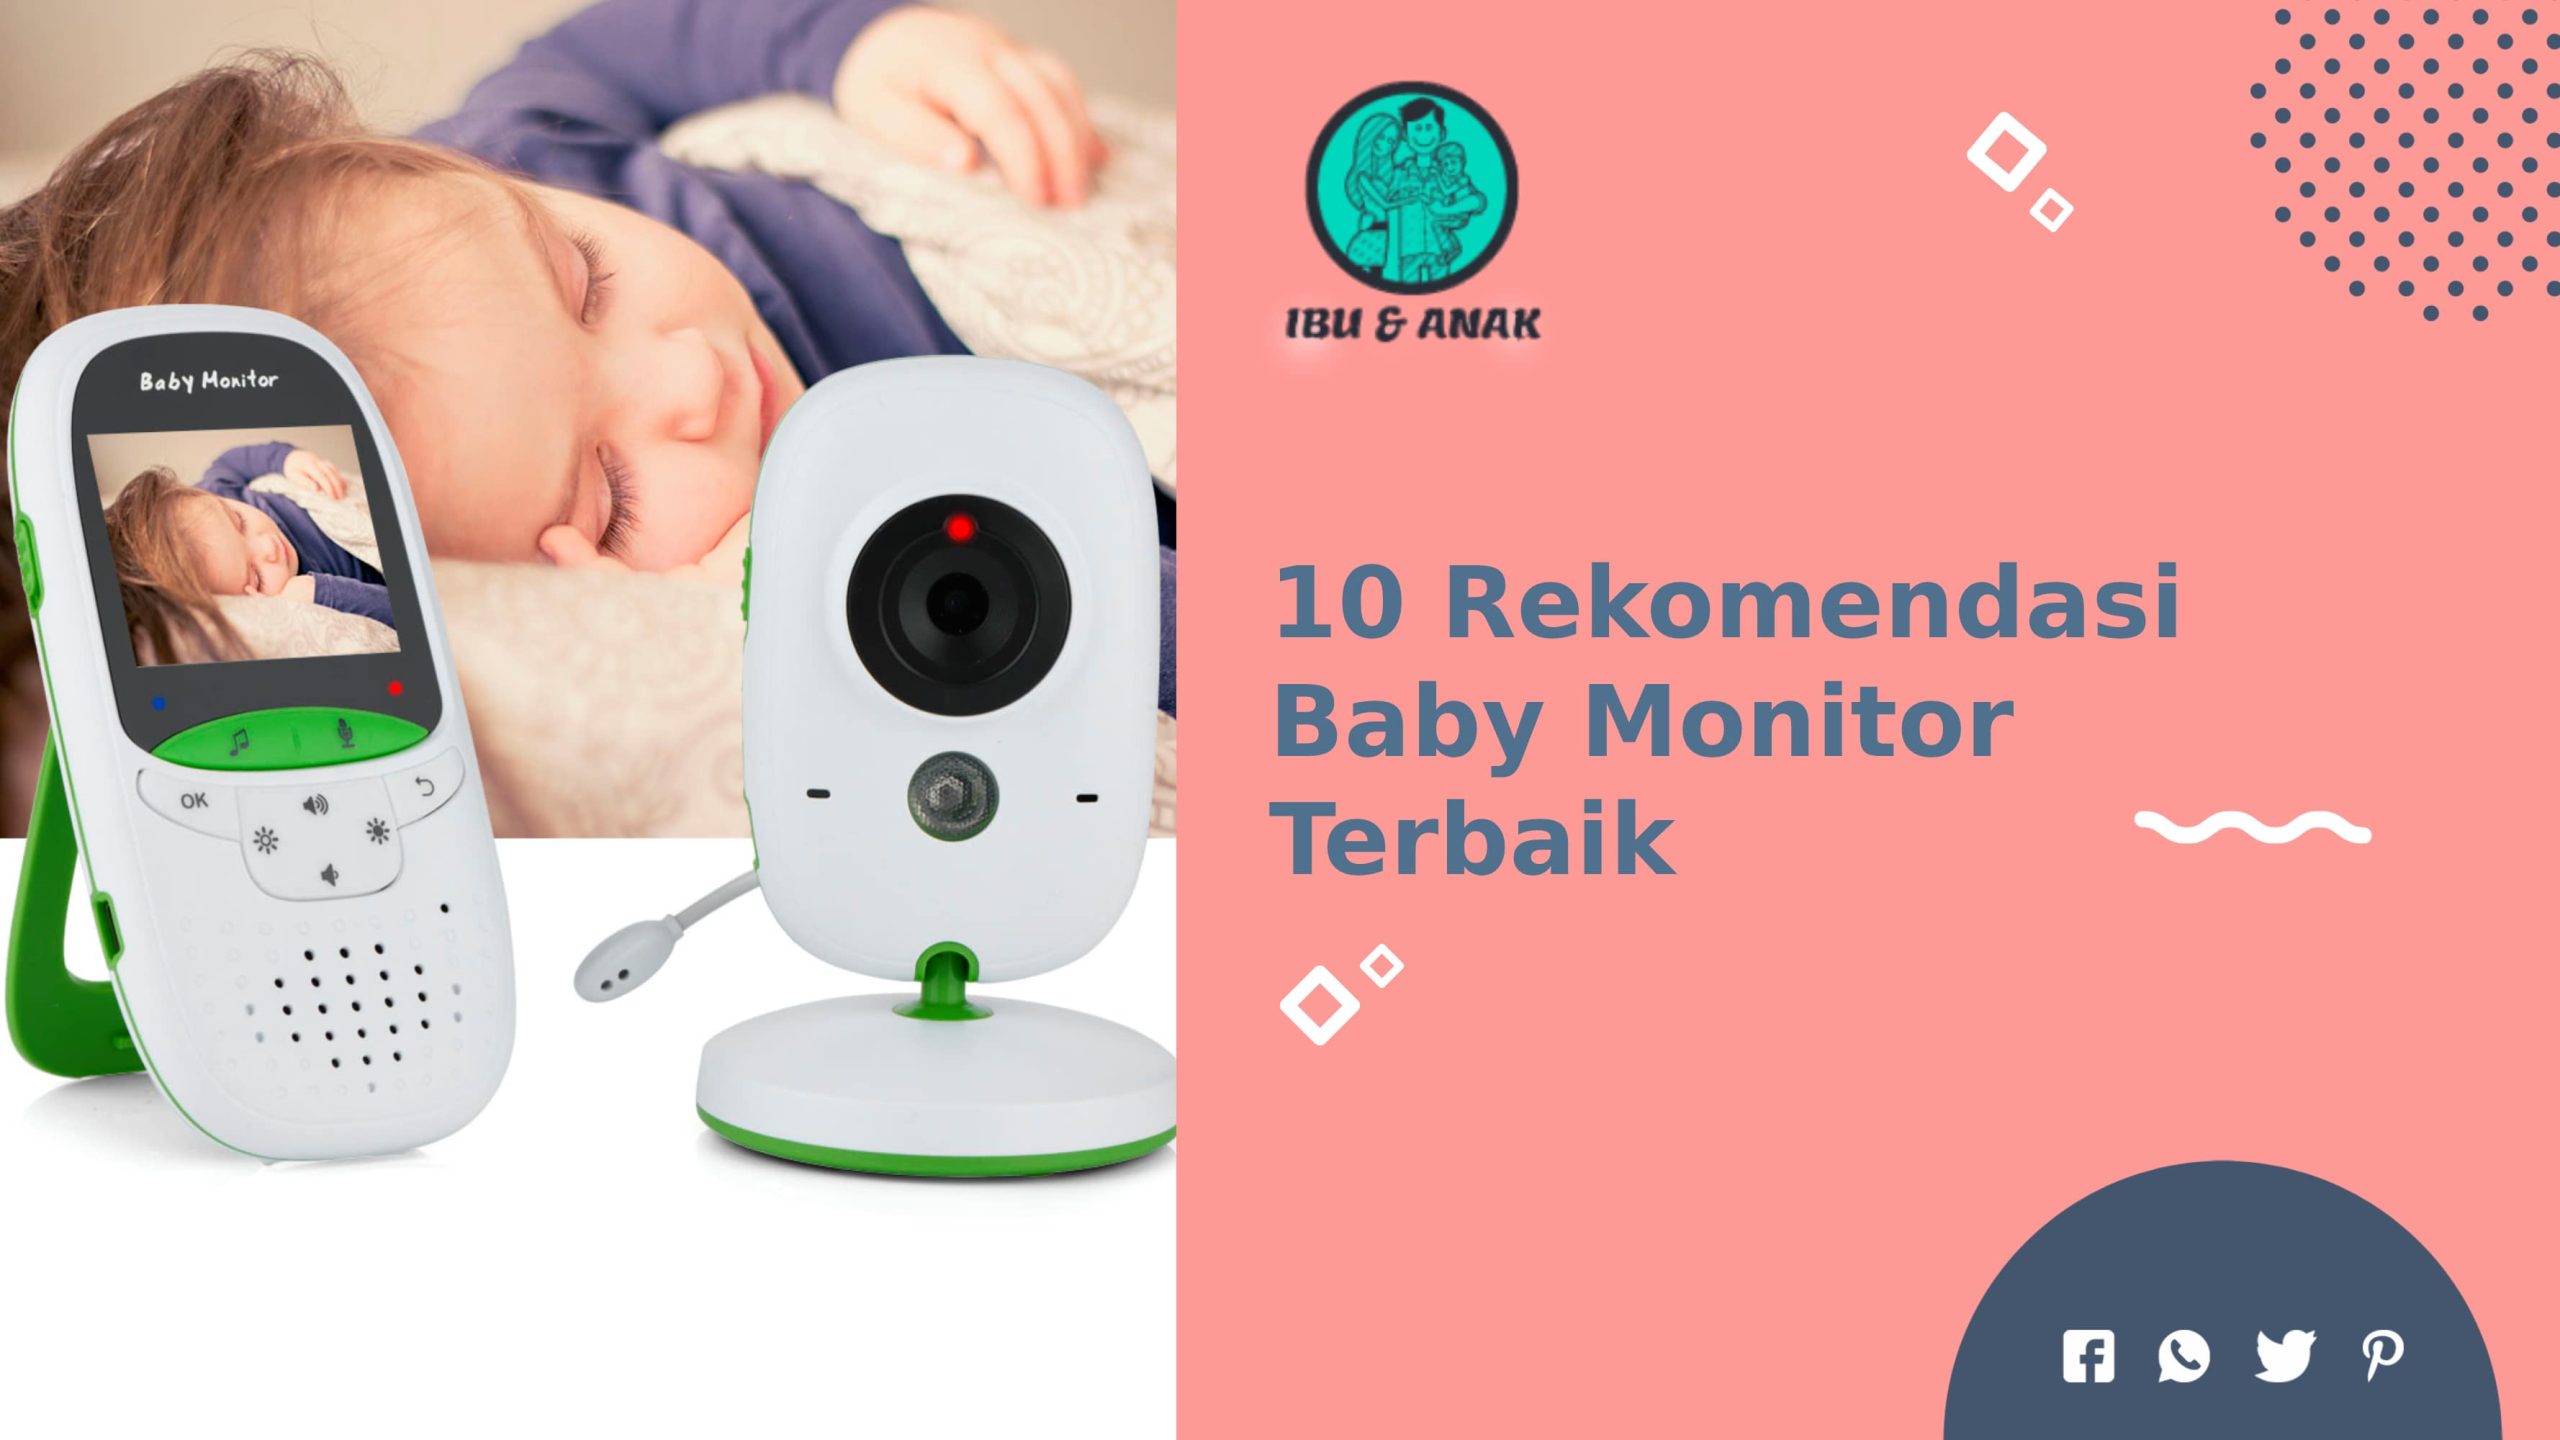 Rekomendasi Baby Monitor Terbaik Harga Murah